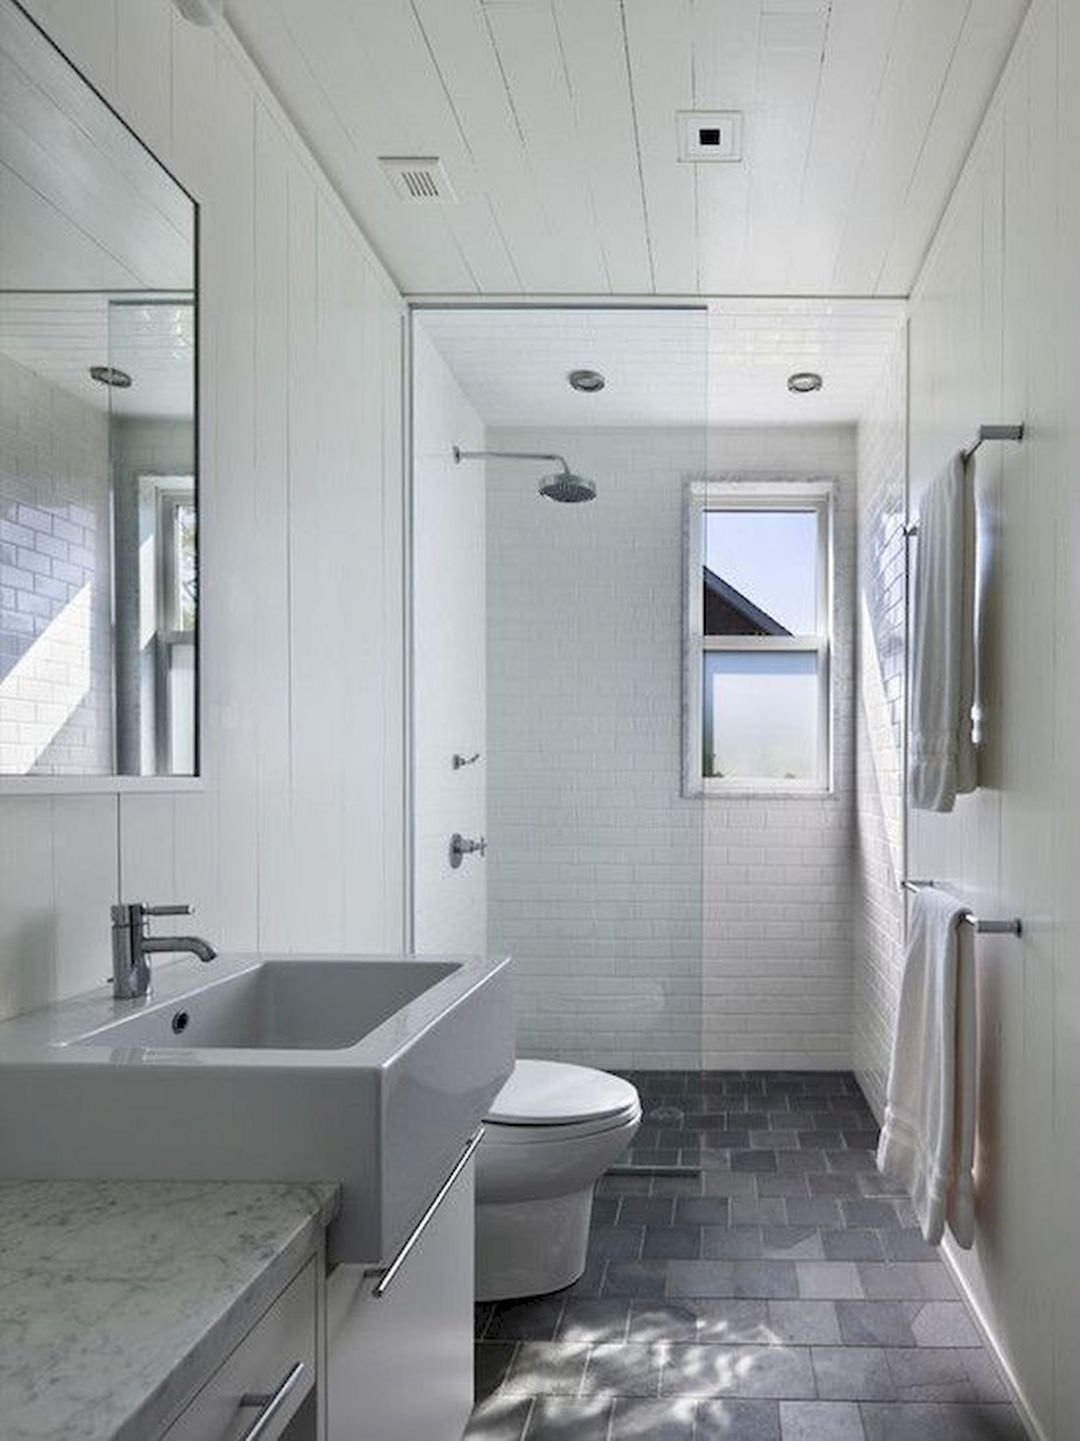 Узкая длинная ванная комната дизайн фото